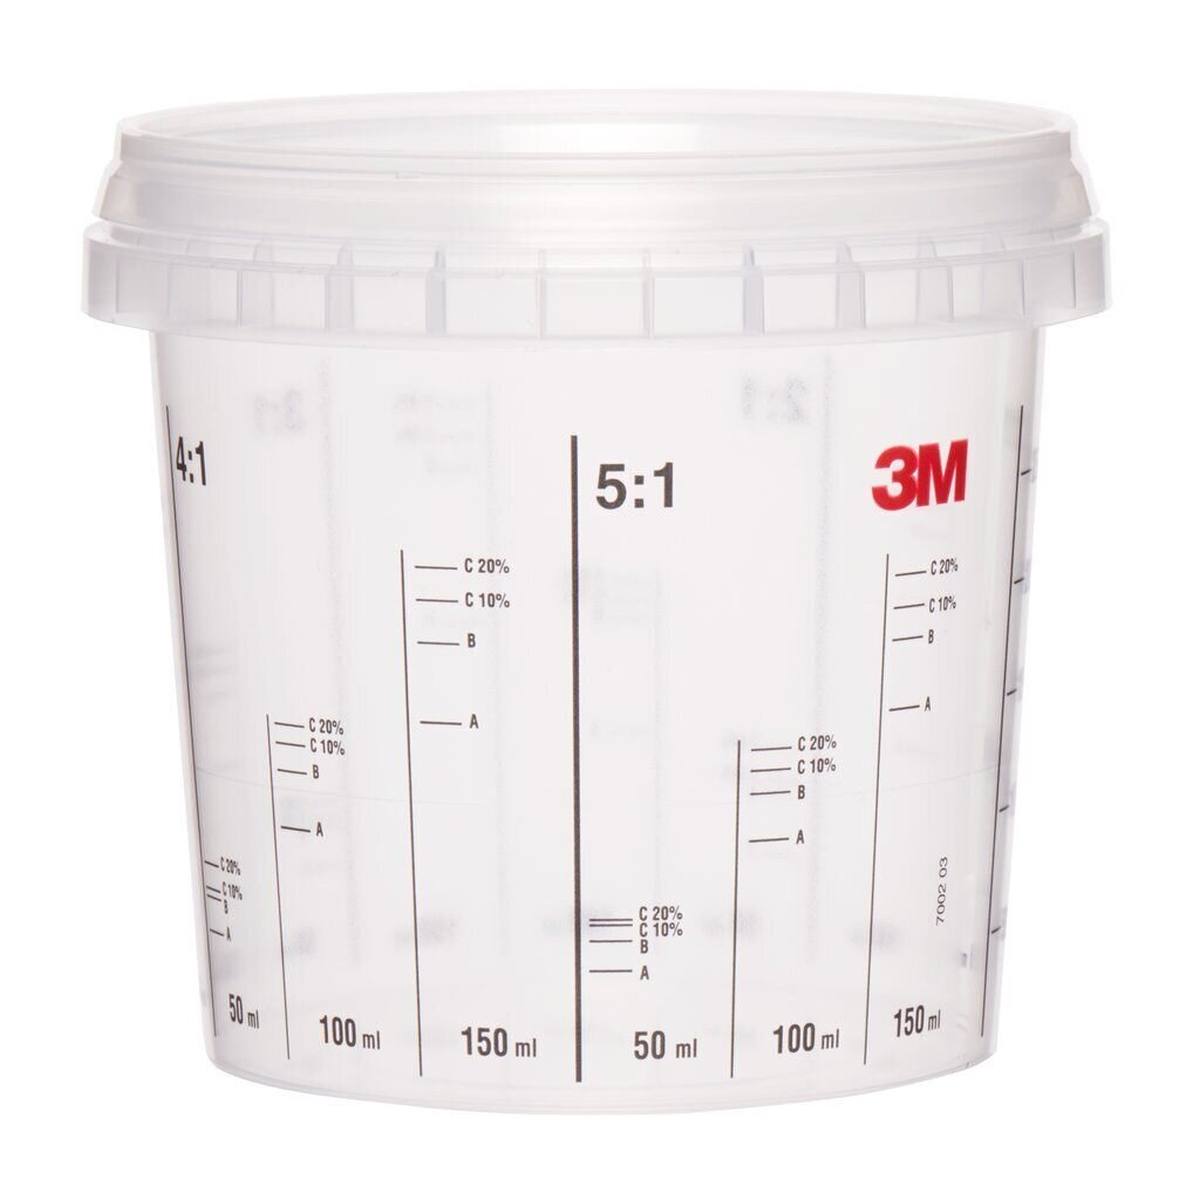 3M Vaso mezclador, 365 ml 90 unidades / envase